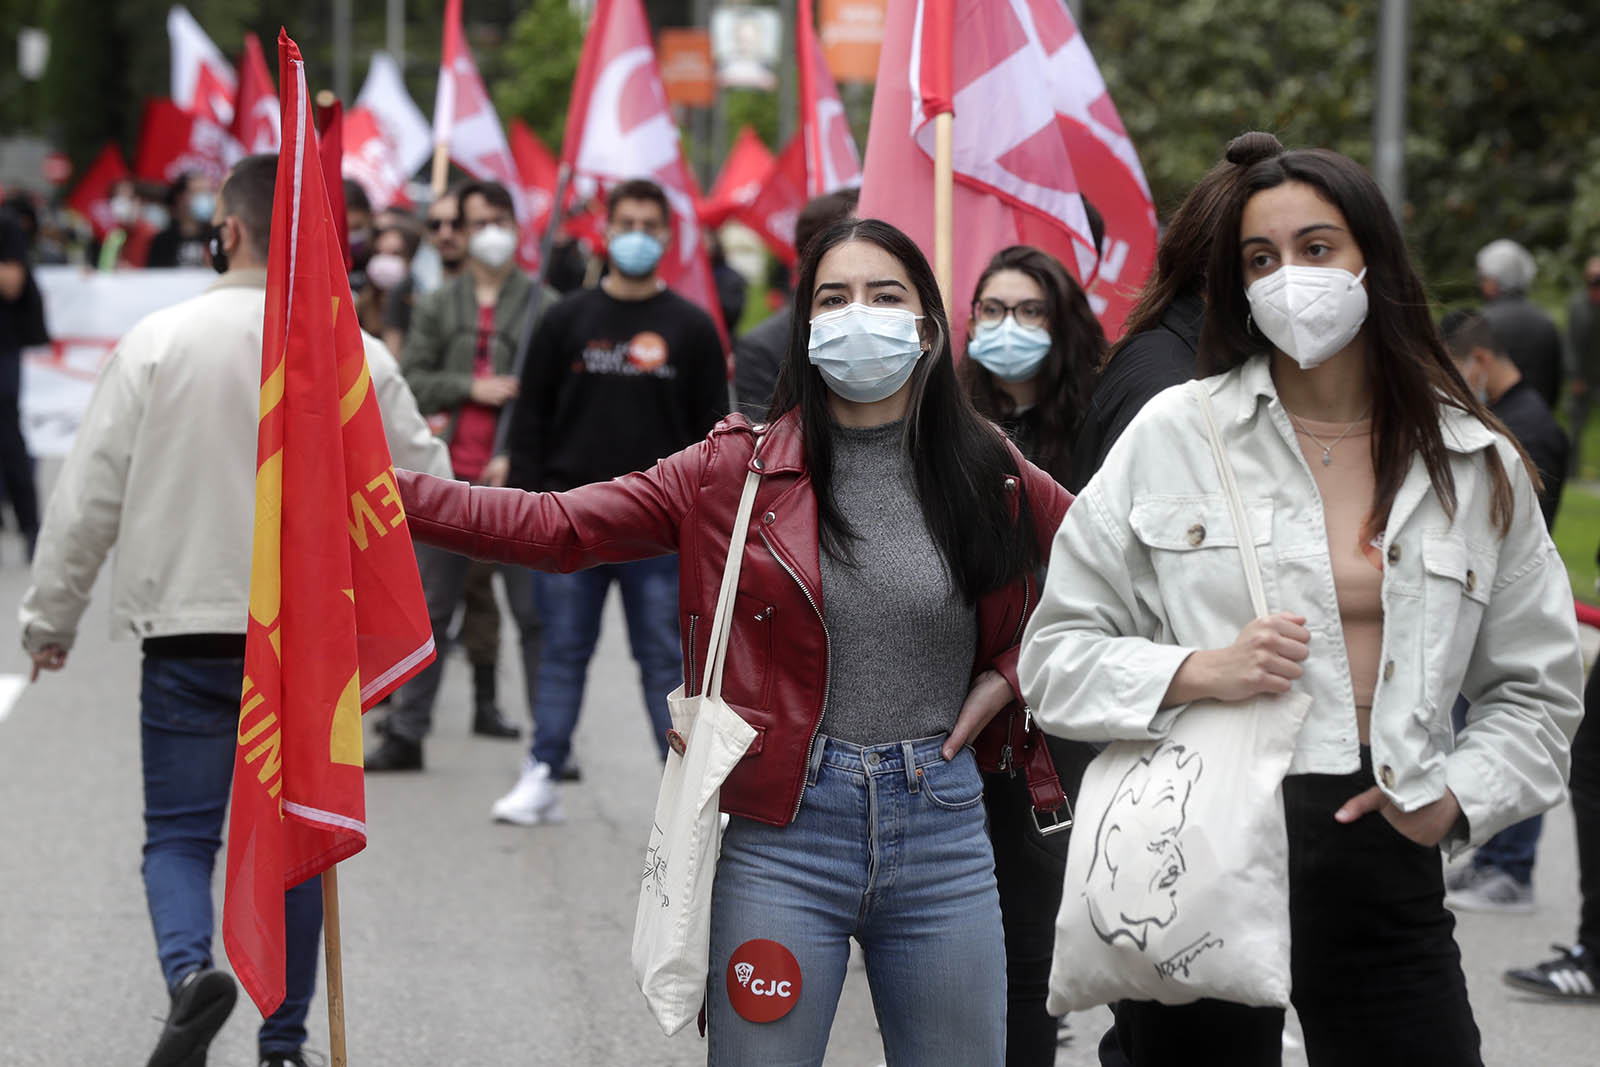 מפגינים דורשים העלאת שכר בתהלוכת אחד במאי 2021 במדריד (צילום: AP Photo/Paul White)